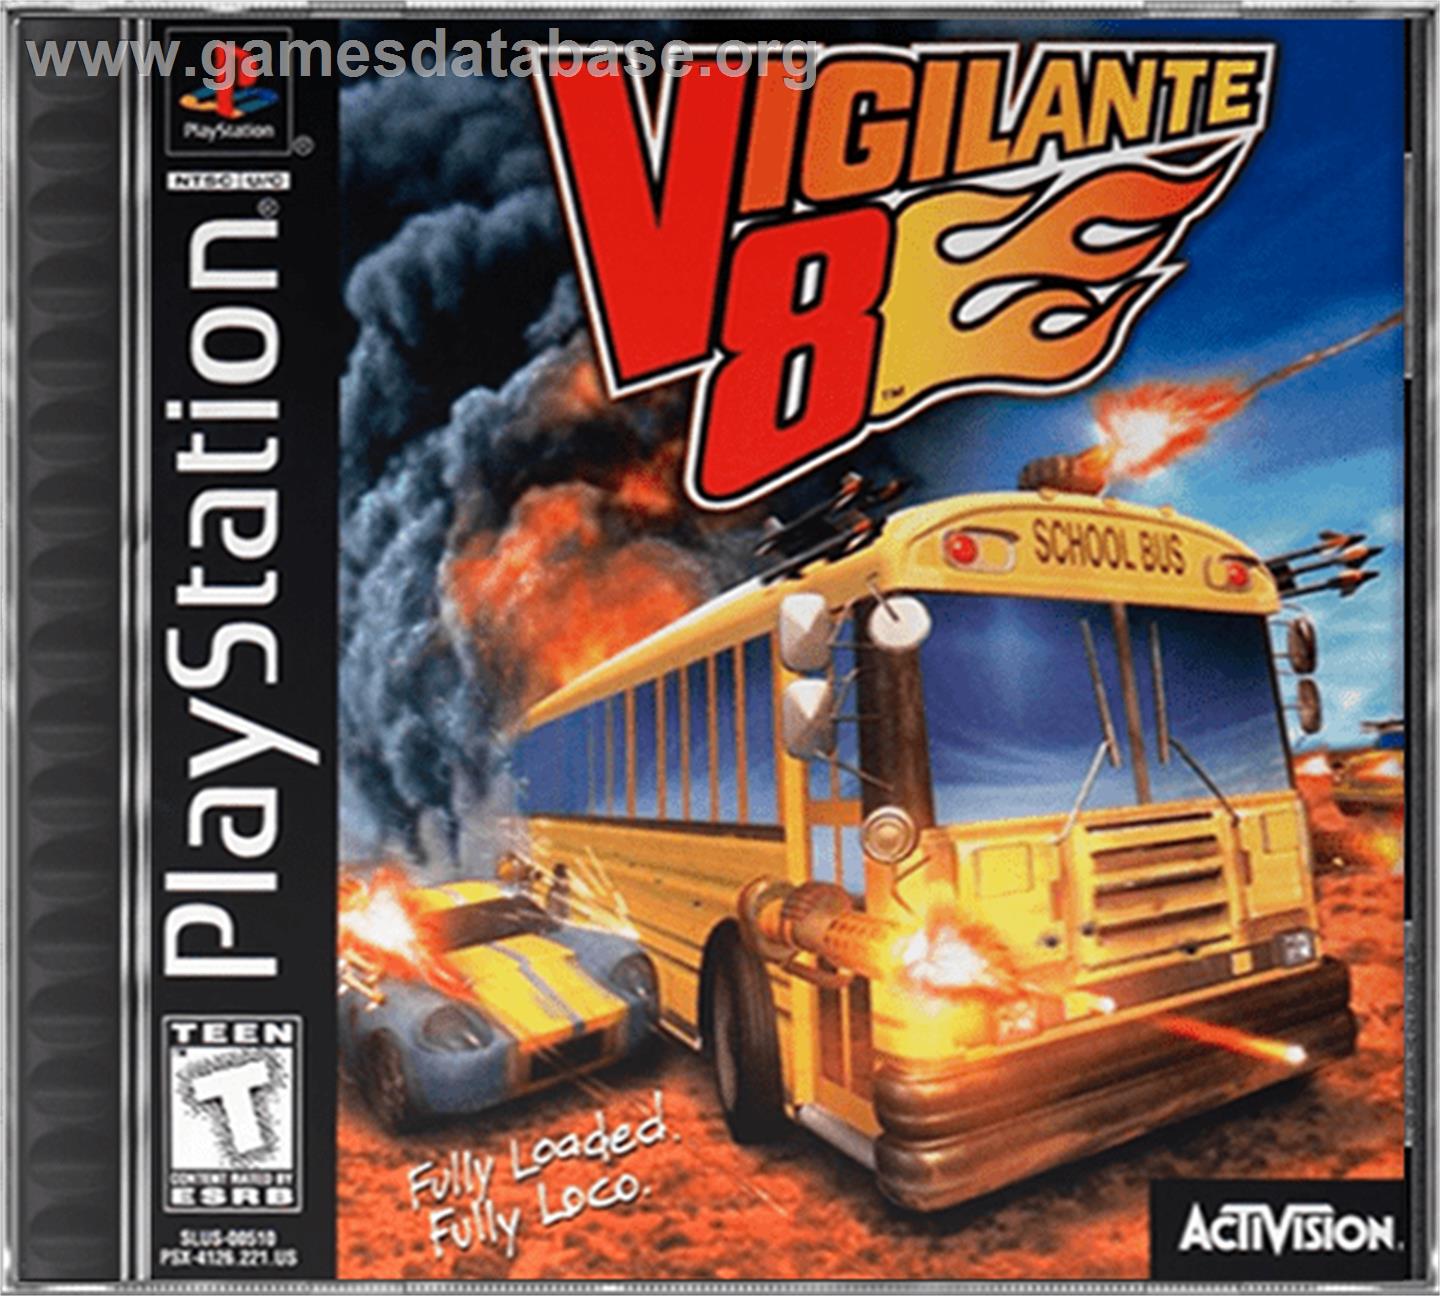 Vigilante 8: 2nd Offense - Sony Playstation - Artwork - Box